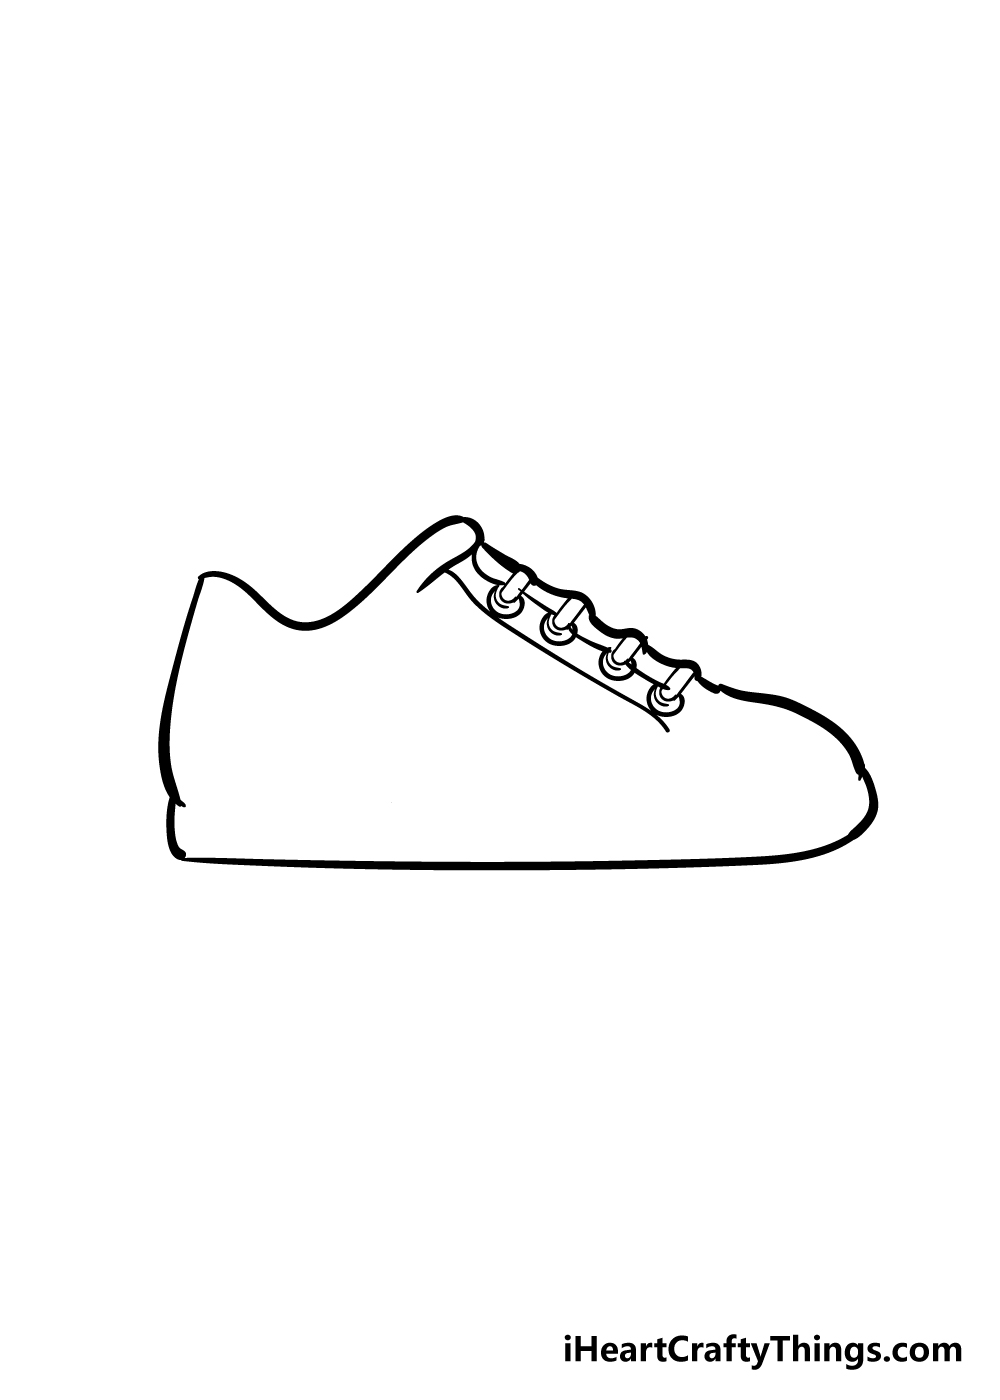 Shoes3 - Hướng dẫn Cách vẽ đôi giày đơn giản với 6 bước cơ bản